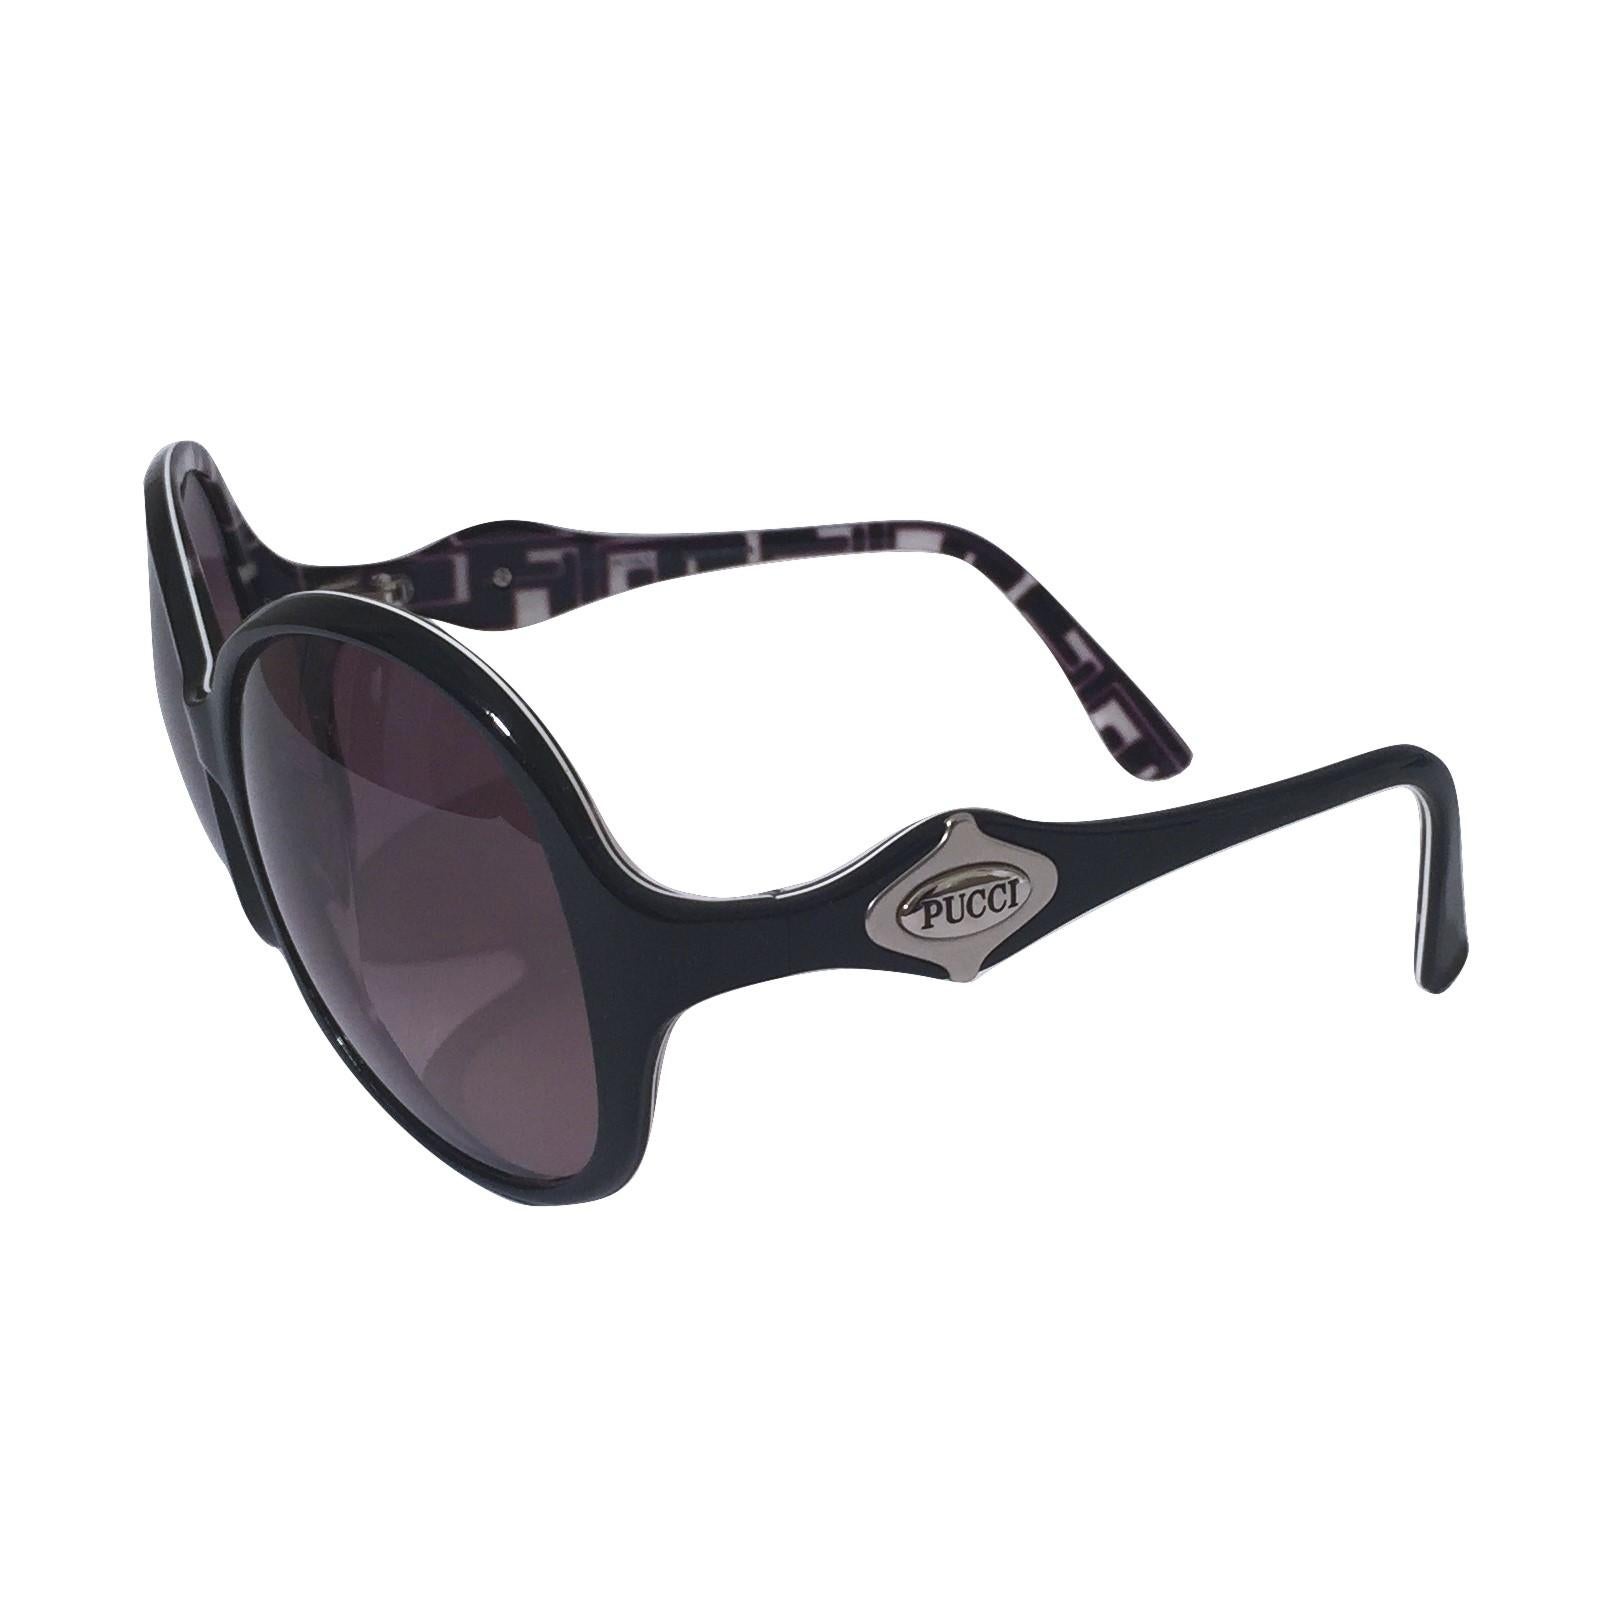 New Emilio Pucci Black Logo Sunglasses With Case & Box 4